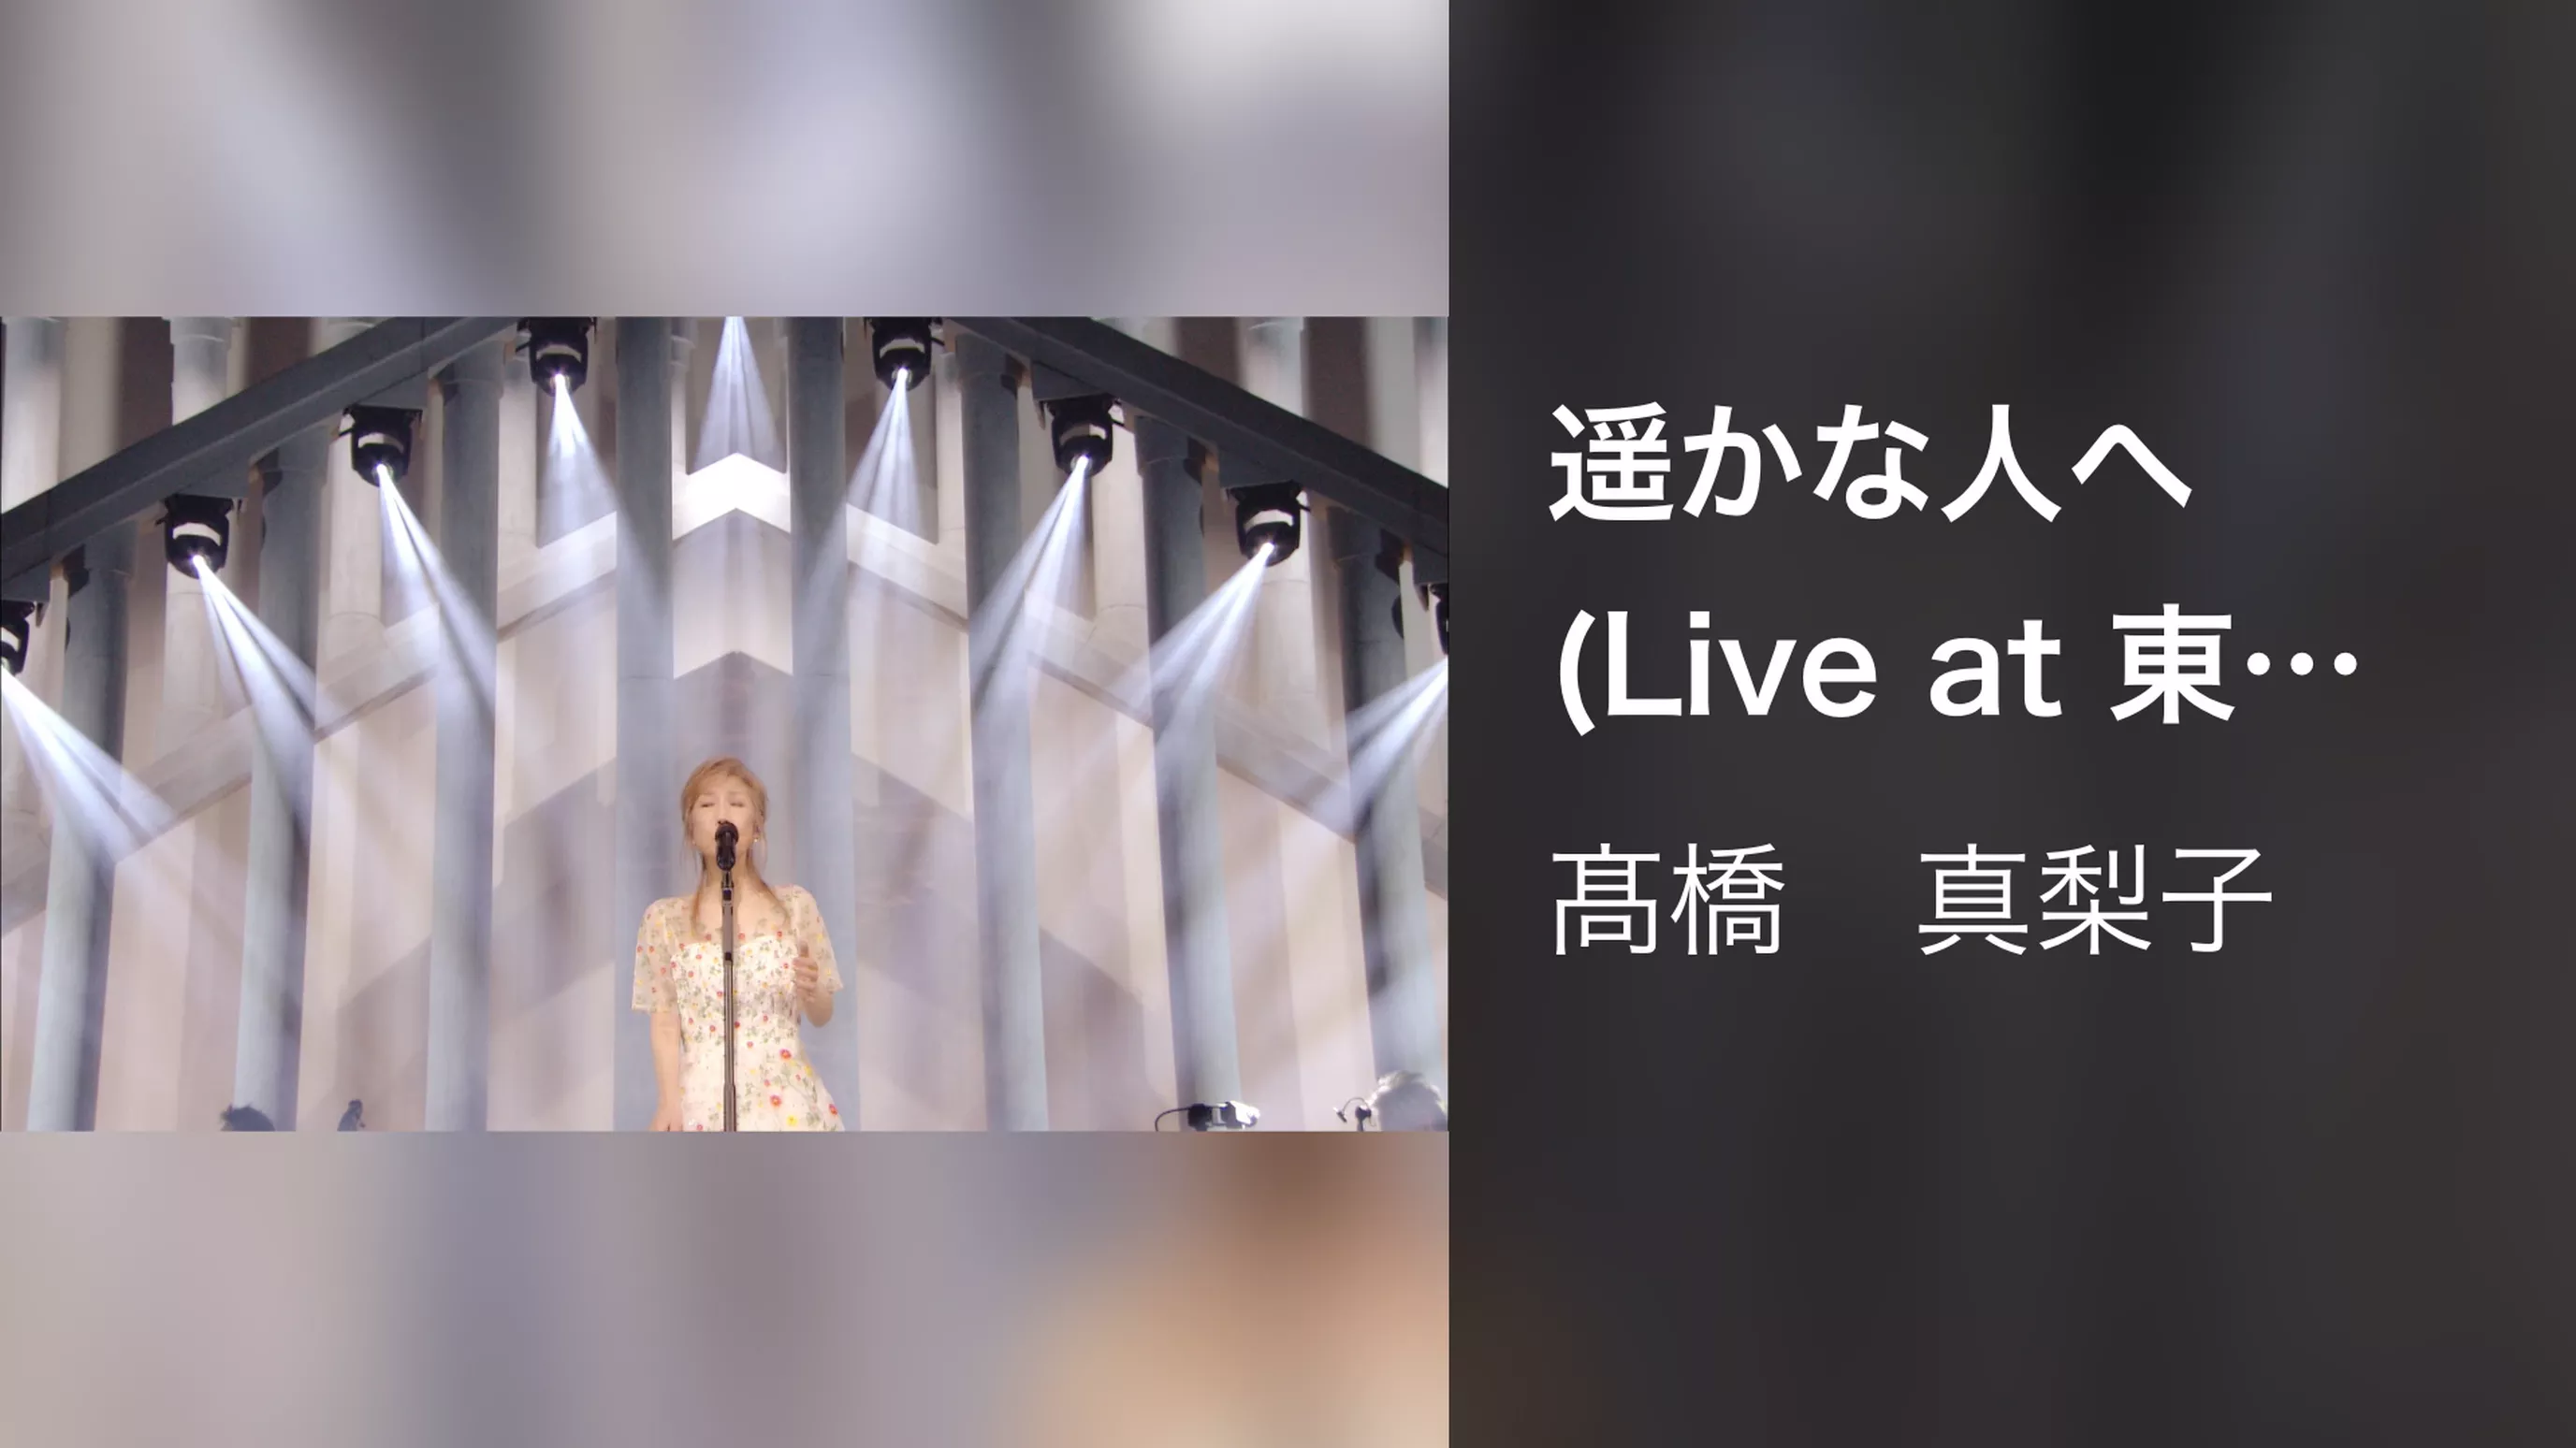 遥かな人へ(Live at 東京国際フォーラム ホール A on November 19, 2016)